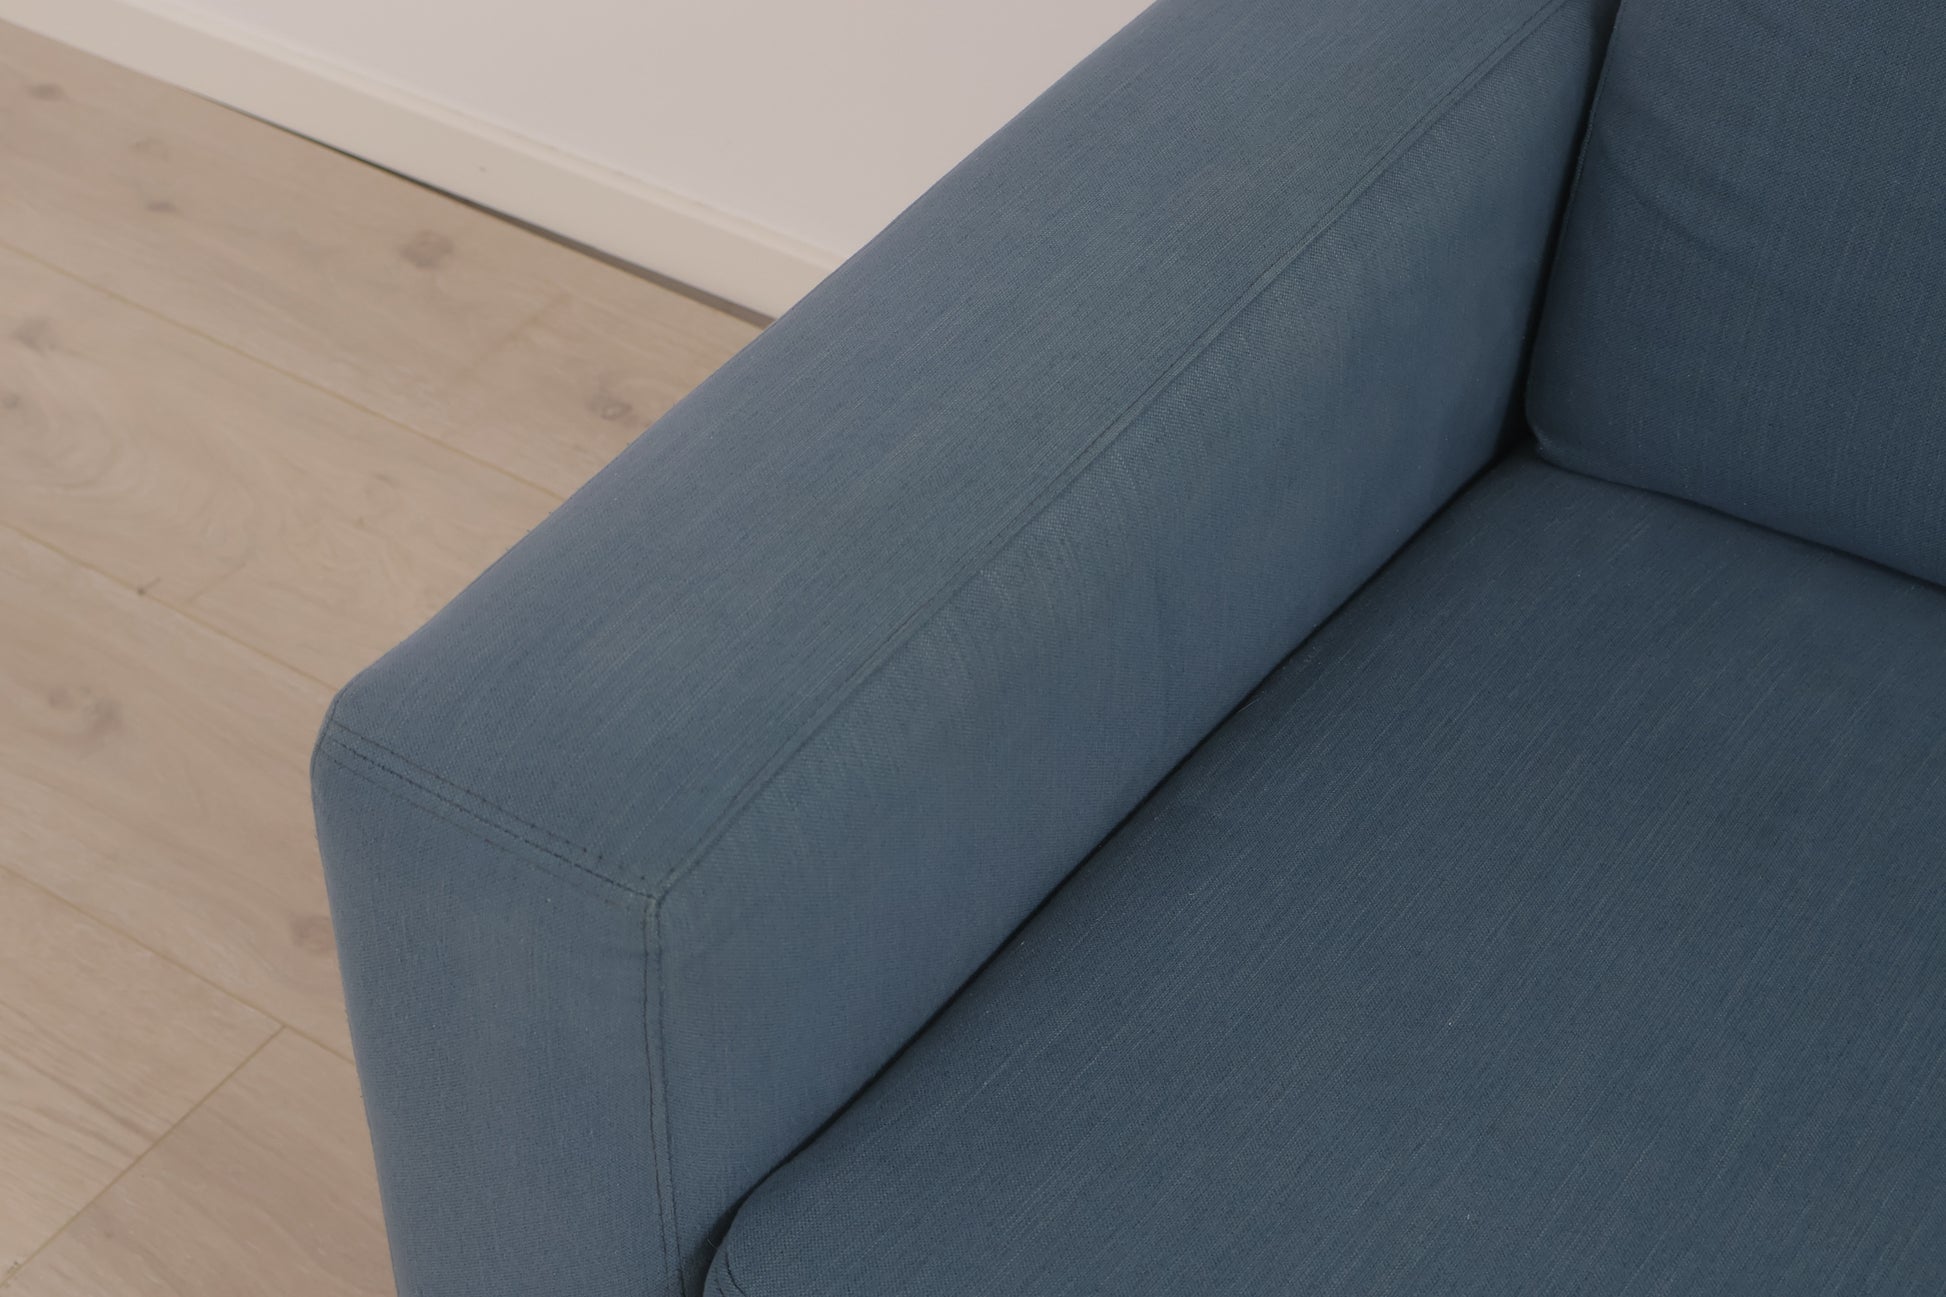 Nyrenset | Blå Bolia Scandinavia 2-seter sofa med eikebein